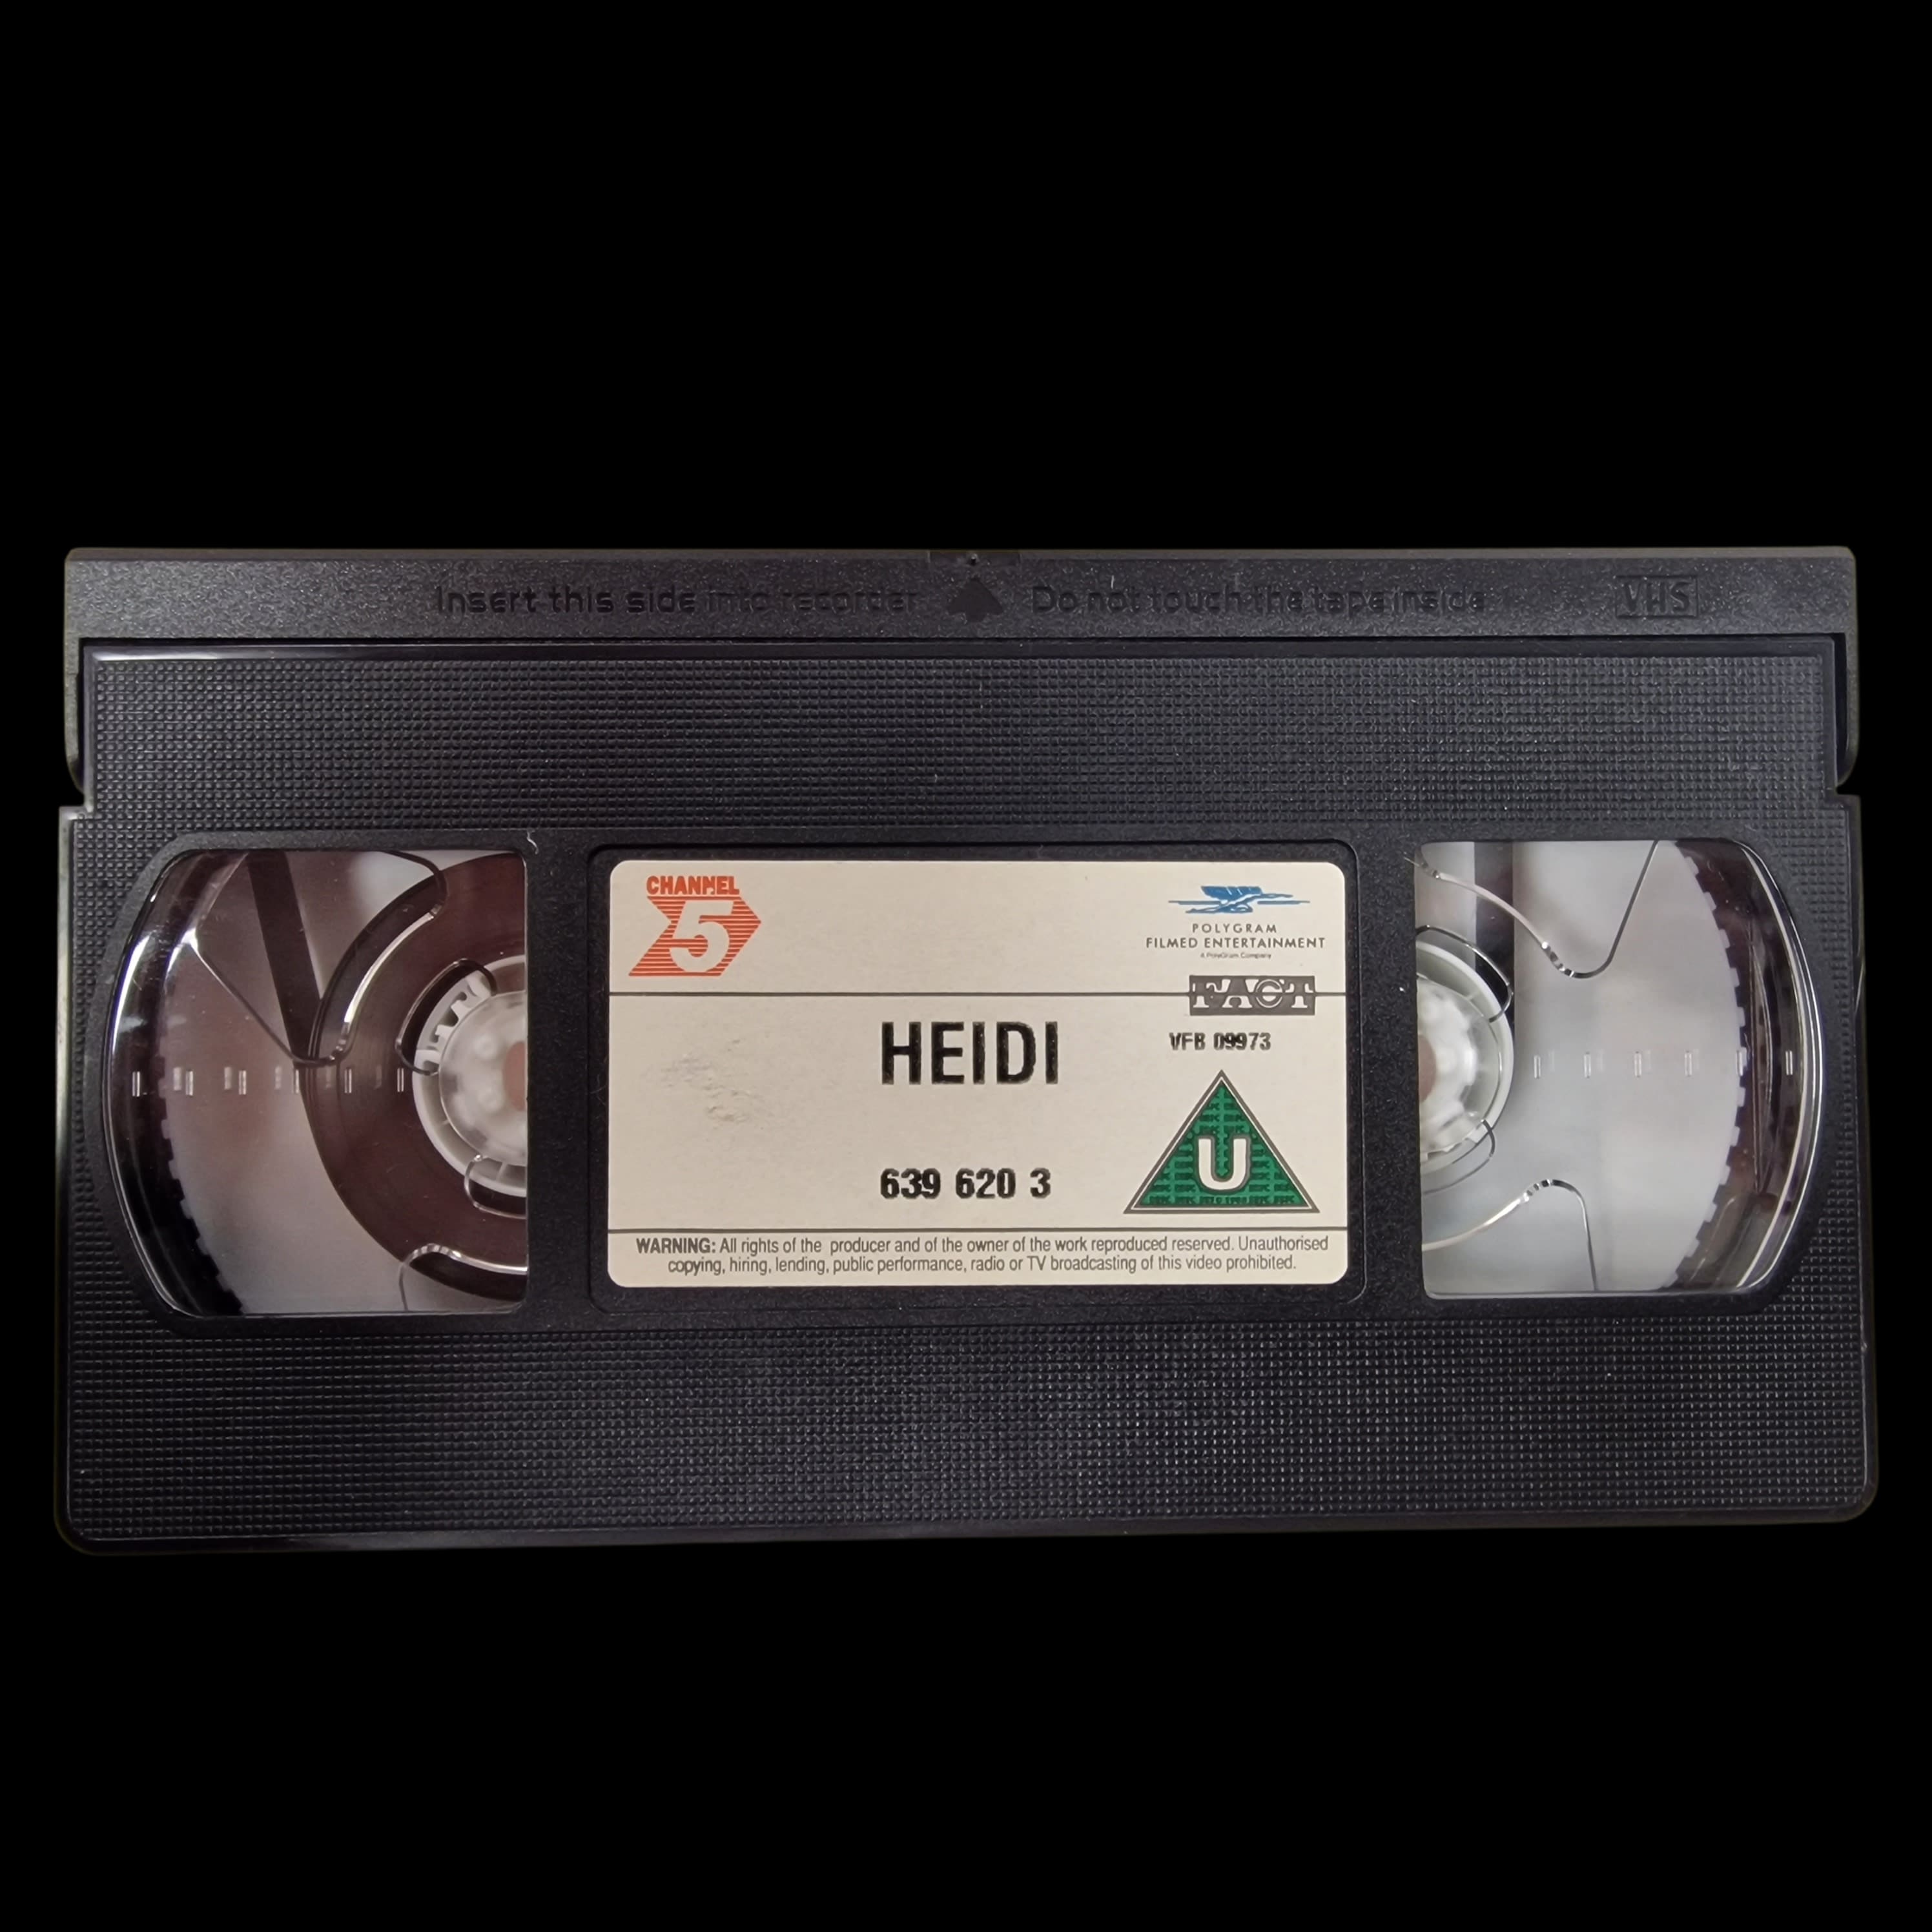 VHS Movie Heidi Animation Video Cassette Susan Schiff